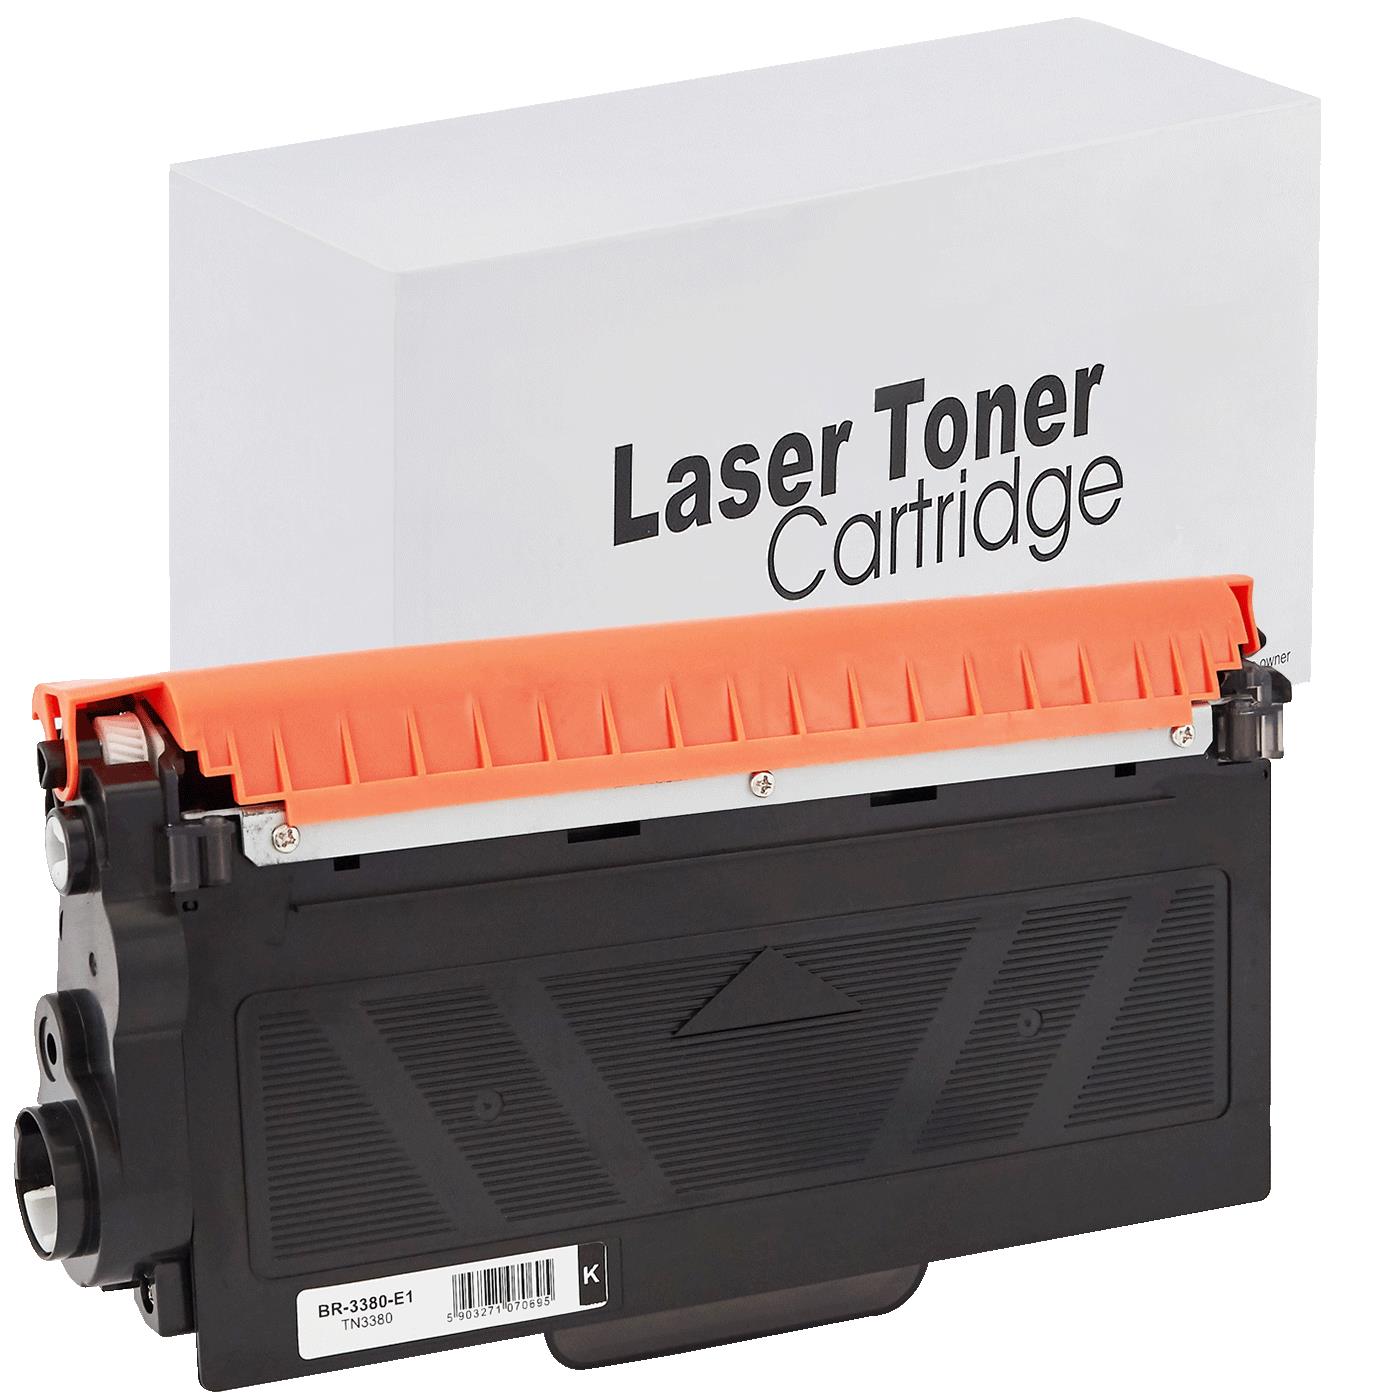 съвместима тонер касета за принтери и печатащи устройства на Brother DCP 8155 DN Toner BR-3380 | TN3380. Ниски цени, прецизно изпълнение, високо качество.